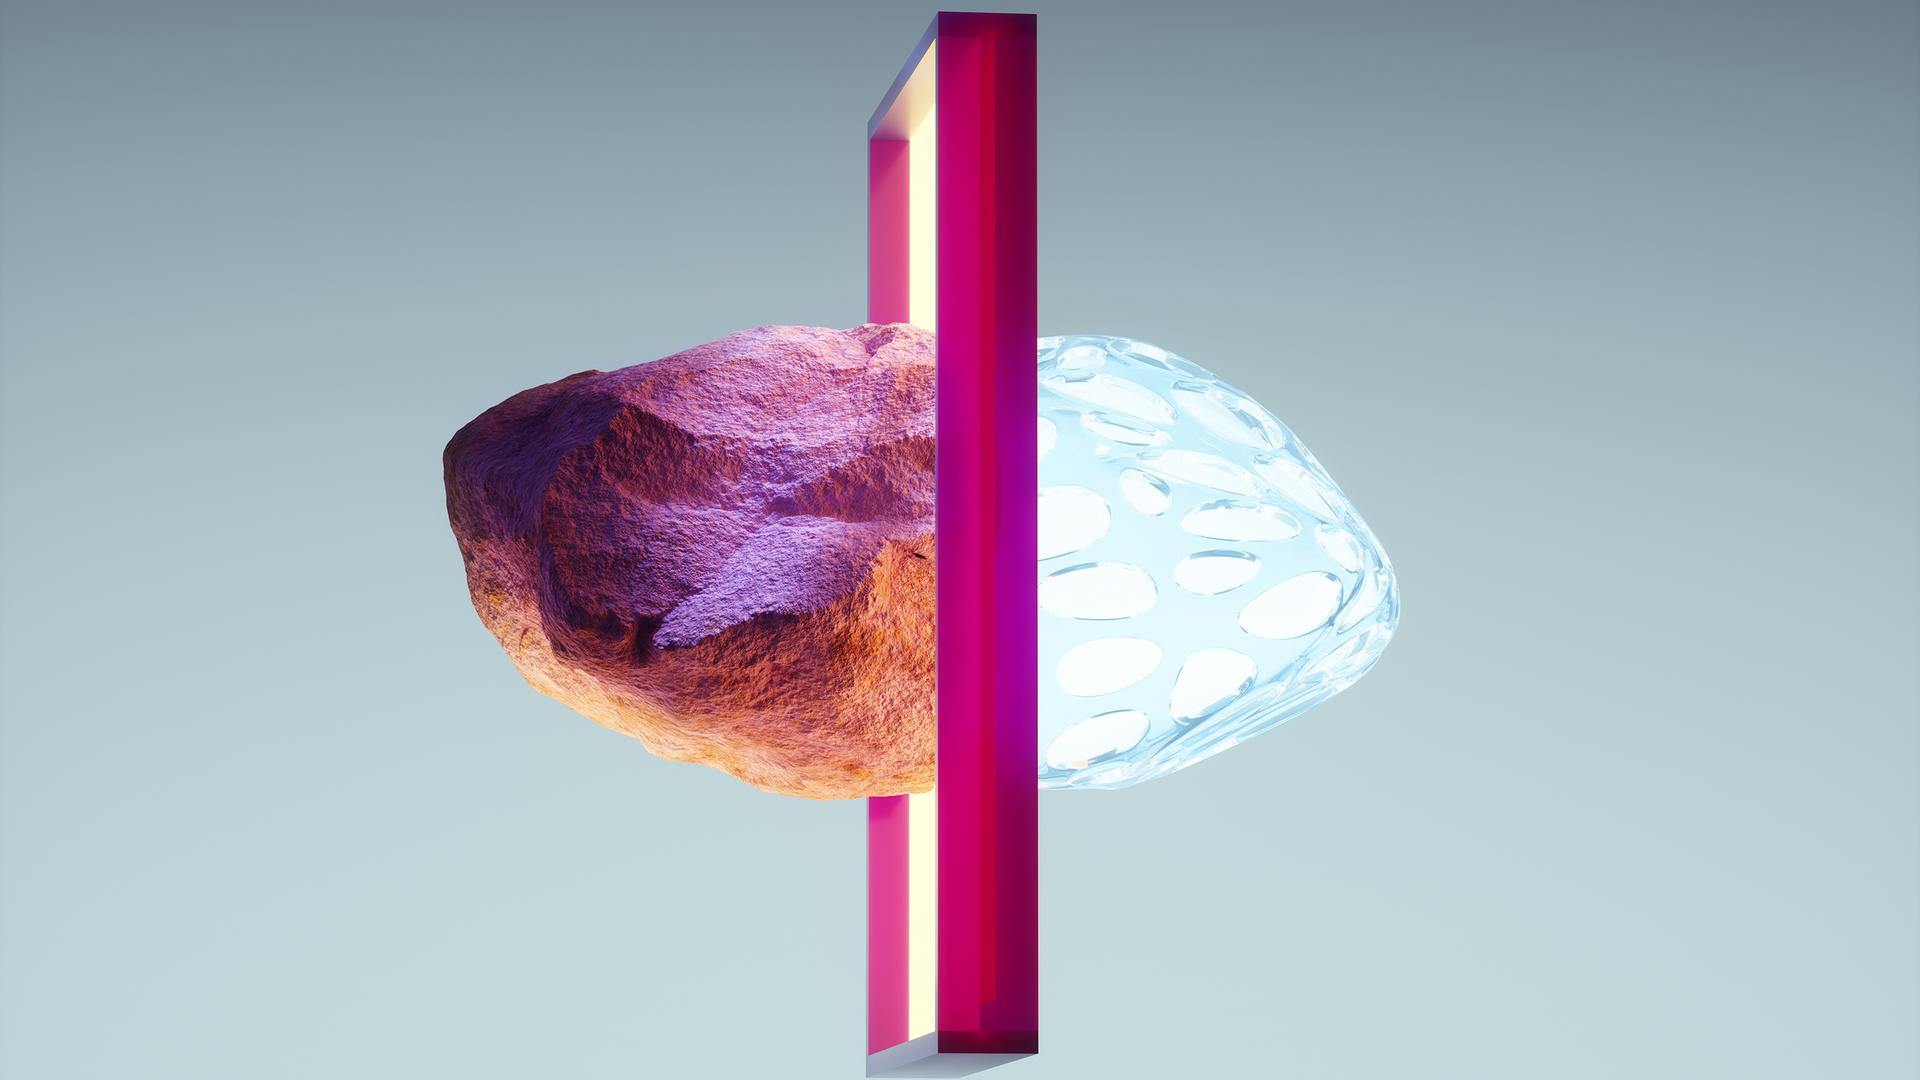 Digital generiertes Bild der Verwandlung von einem Stein in eine leuchtende organische Form bei der Bewegung durch ein Tor-Portal.